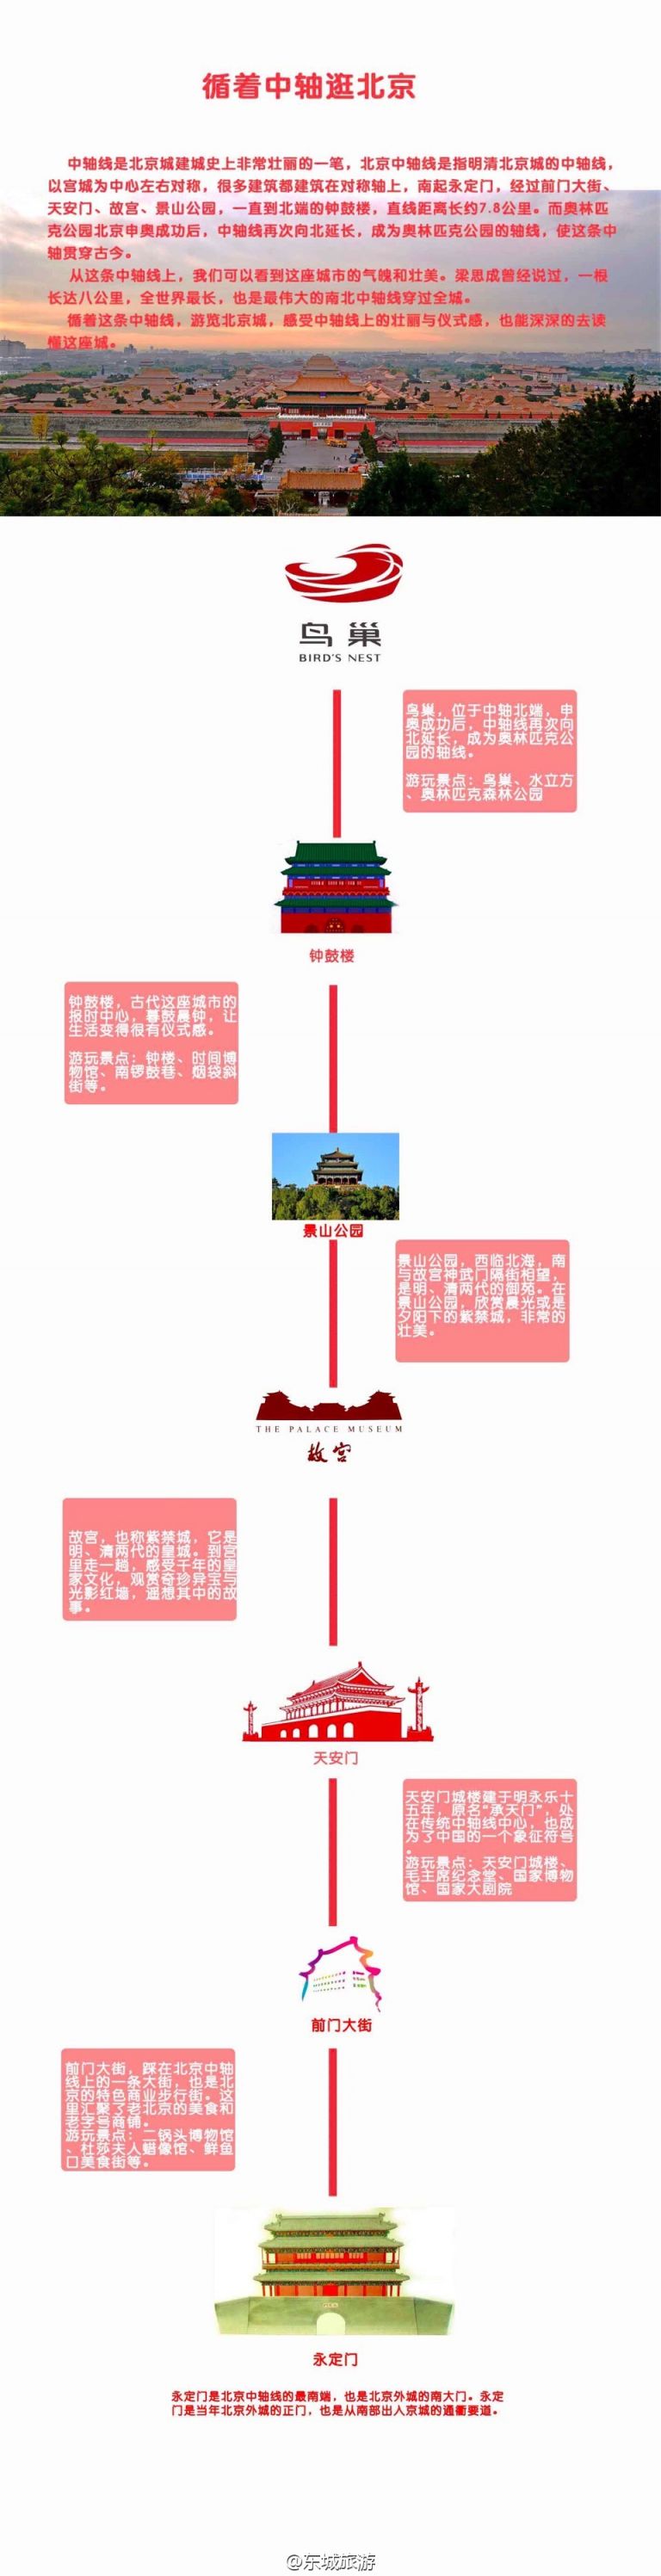 游玩攻略 一张图带你循着中轴逛北京(图解【导语:中轴线是北京